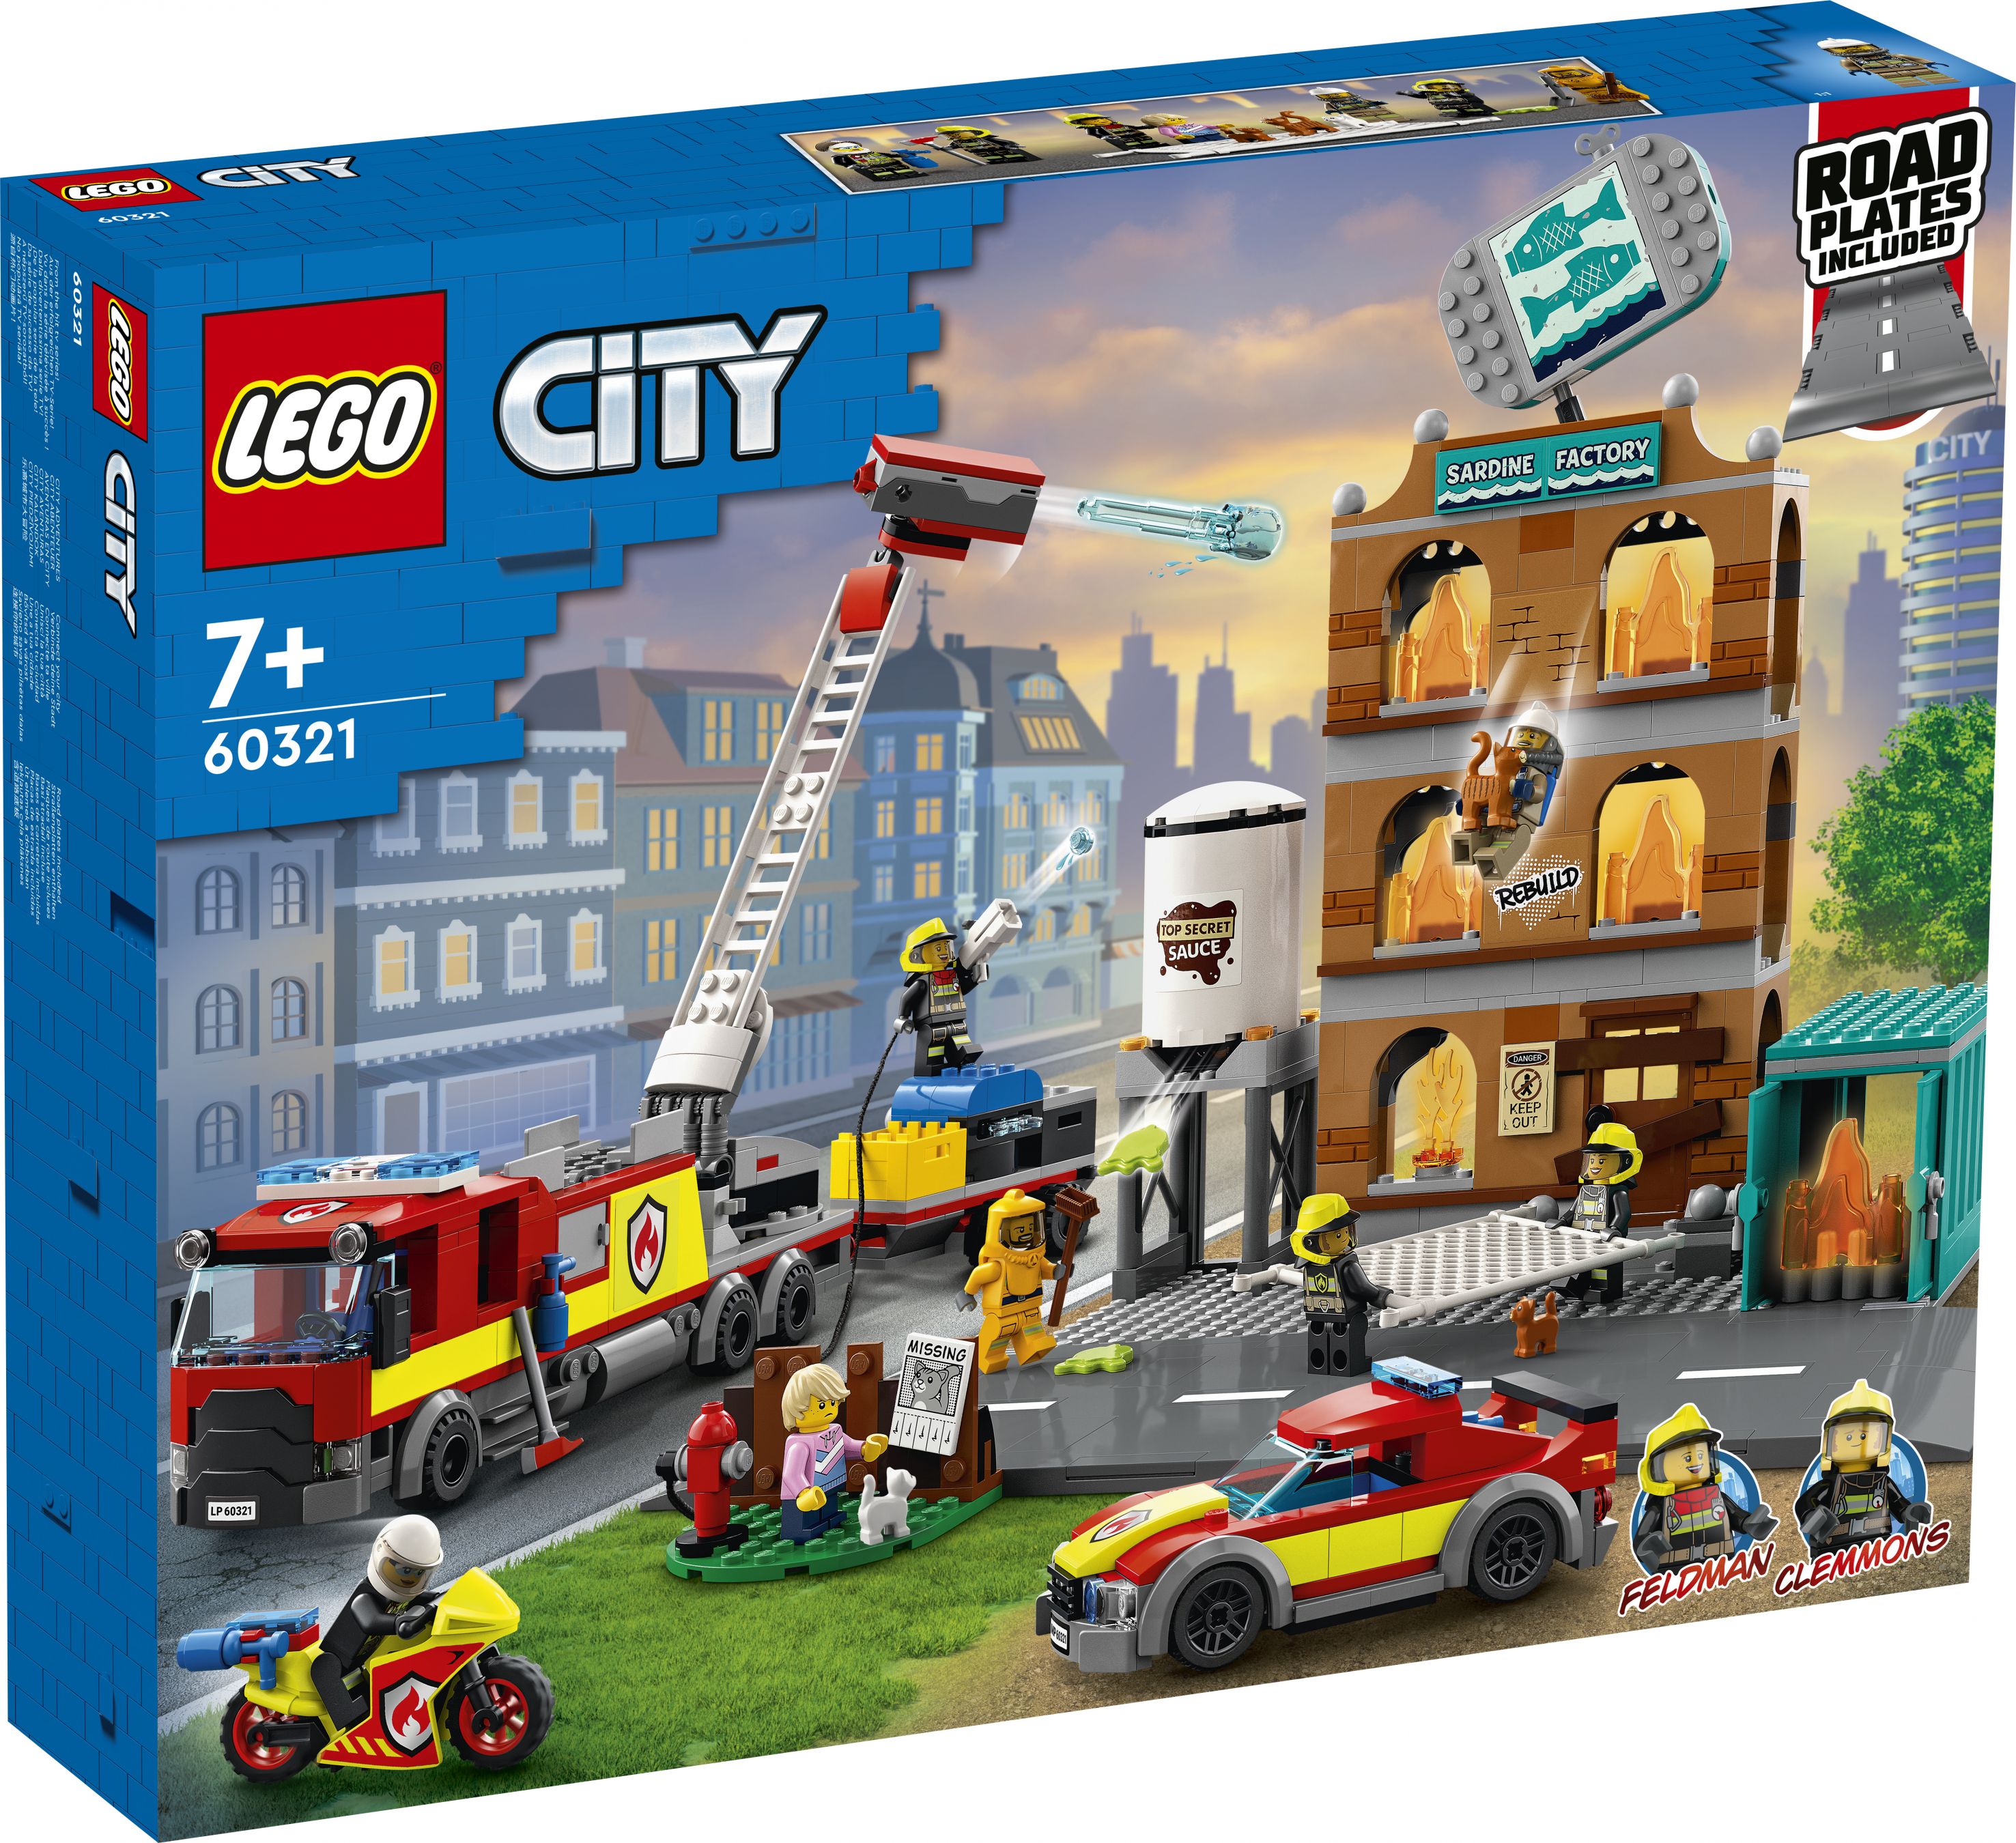 LEGO City 60321 Feuerwehreinsatz mit Löschtruppe LEGO_60321_Box1_V29.jpg